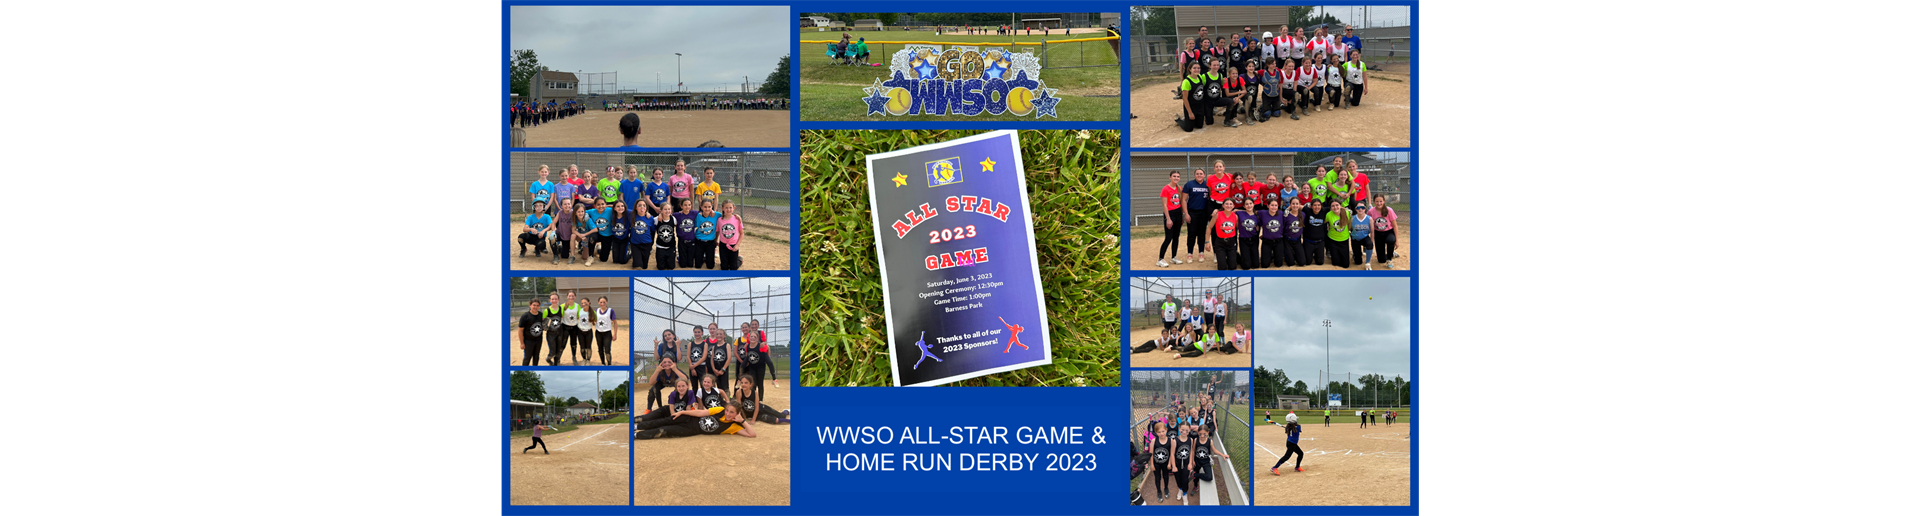 WWSO All-Star Game & Home Run Derby 2023